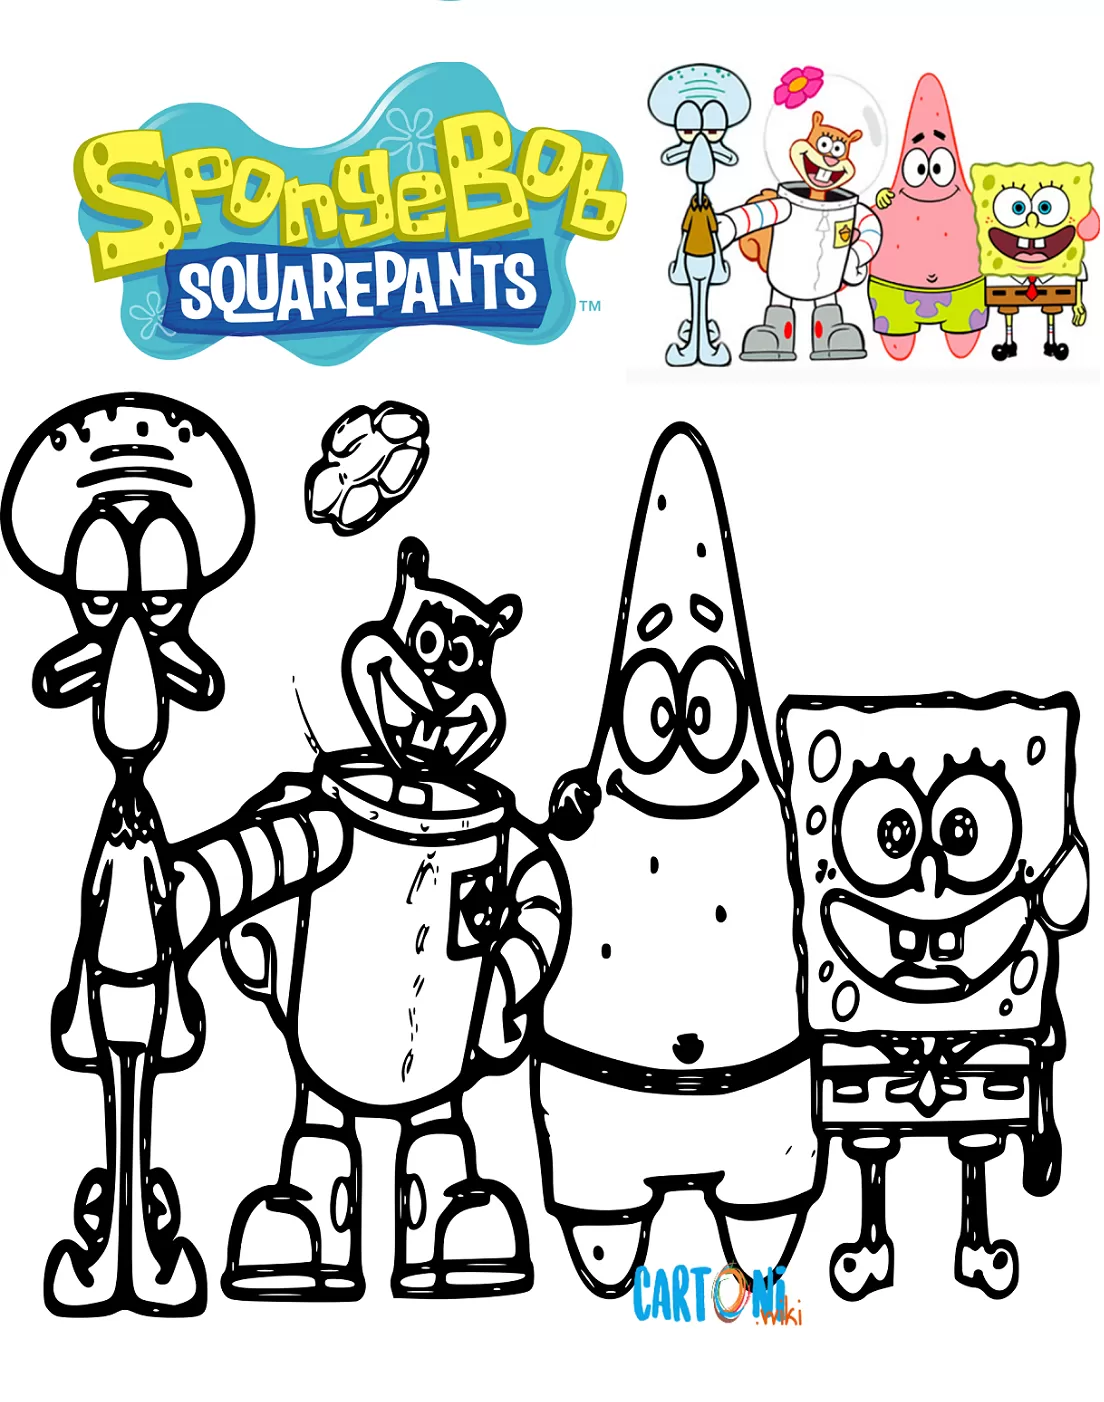 Disegni da colorare di Spongebob